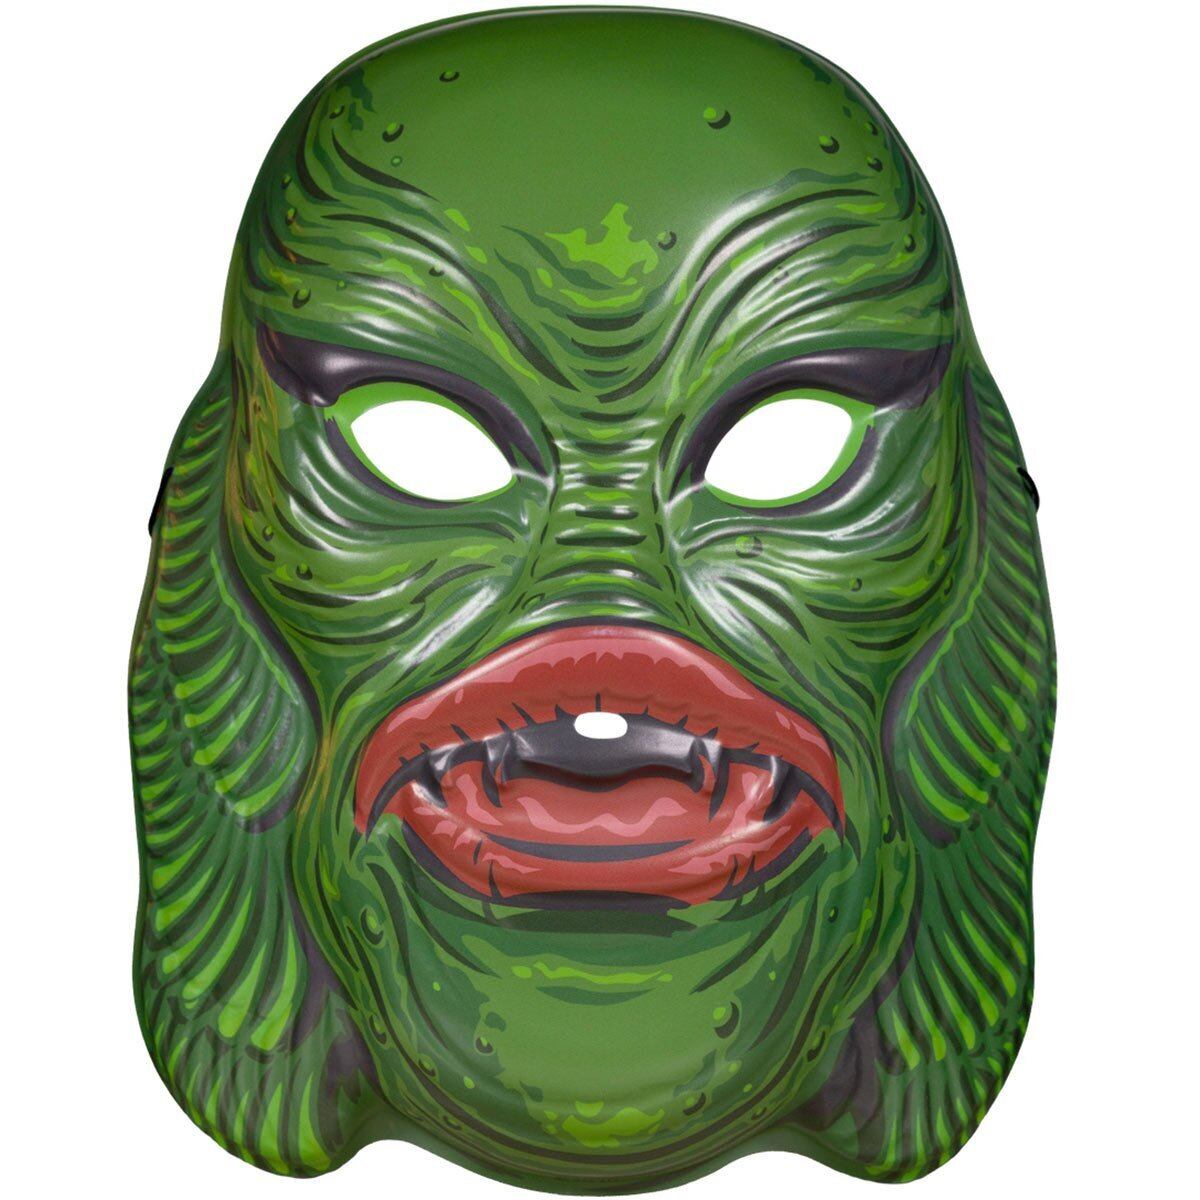 スーパー7 レトロモンスターマスク 大アマゾンの半魚人 (濃緑) マスク 